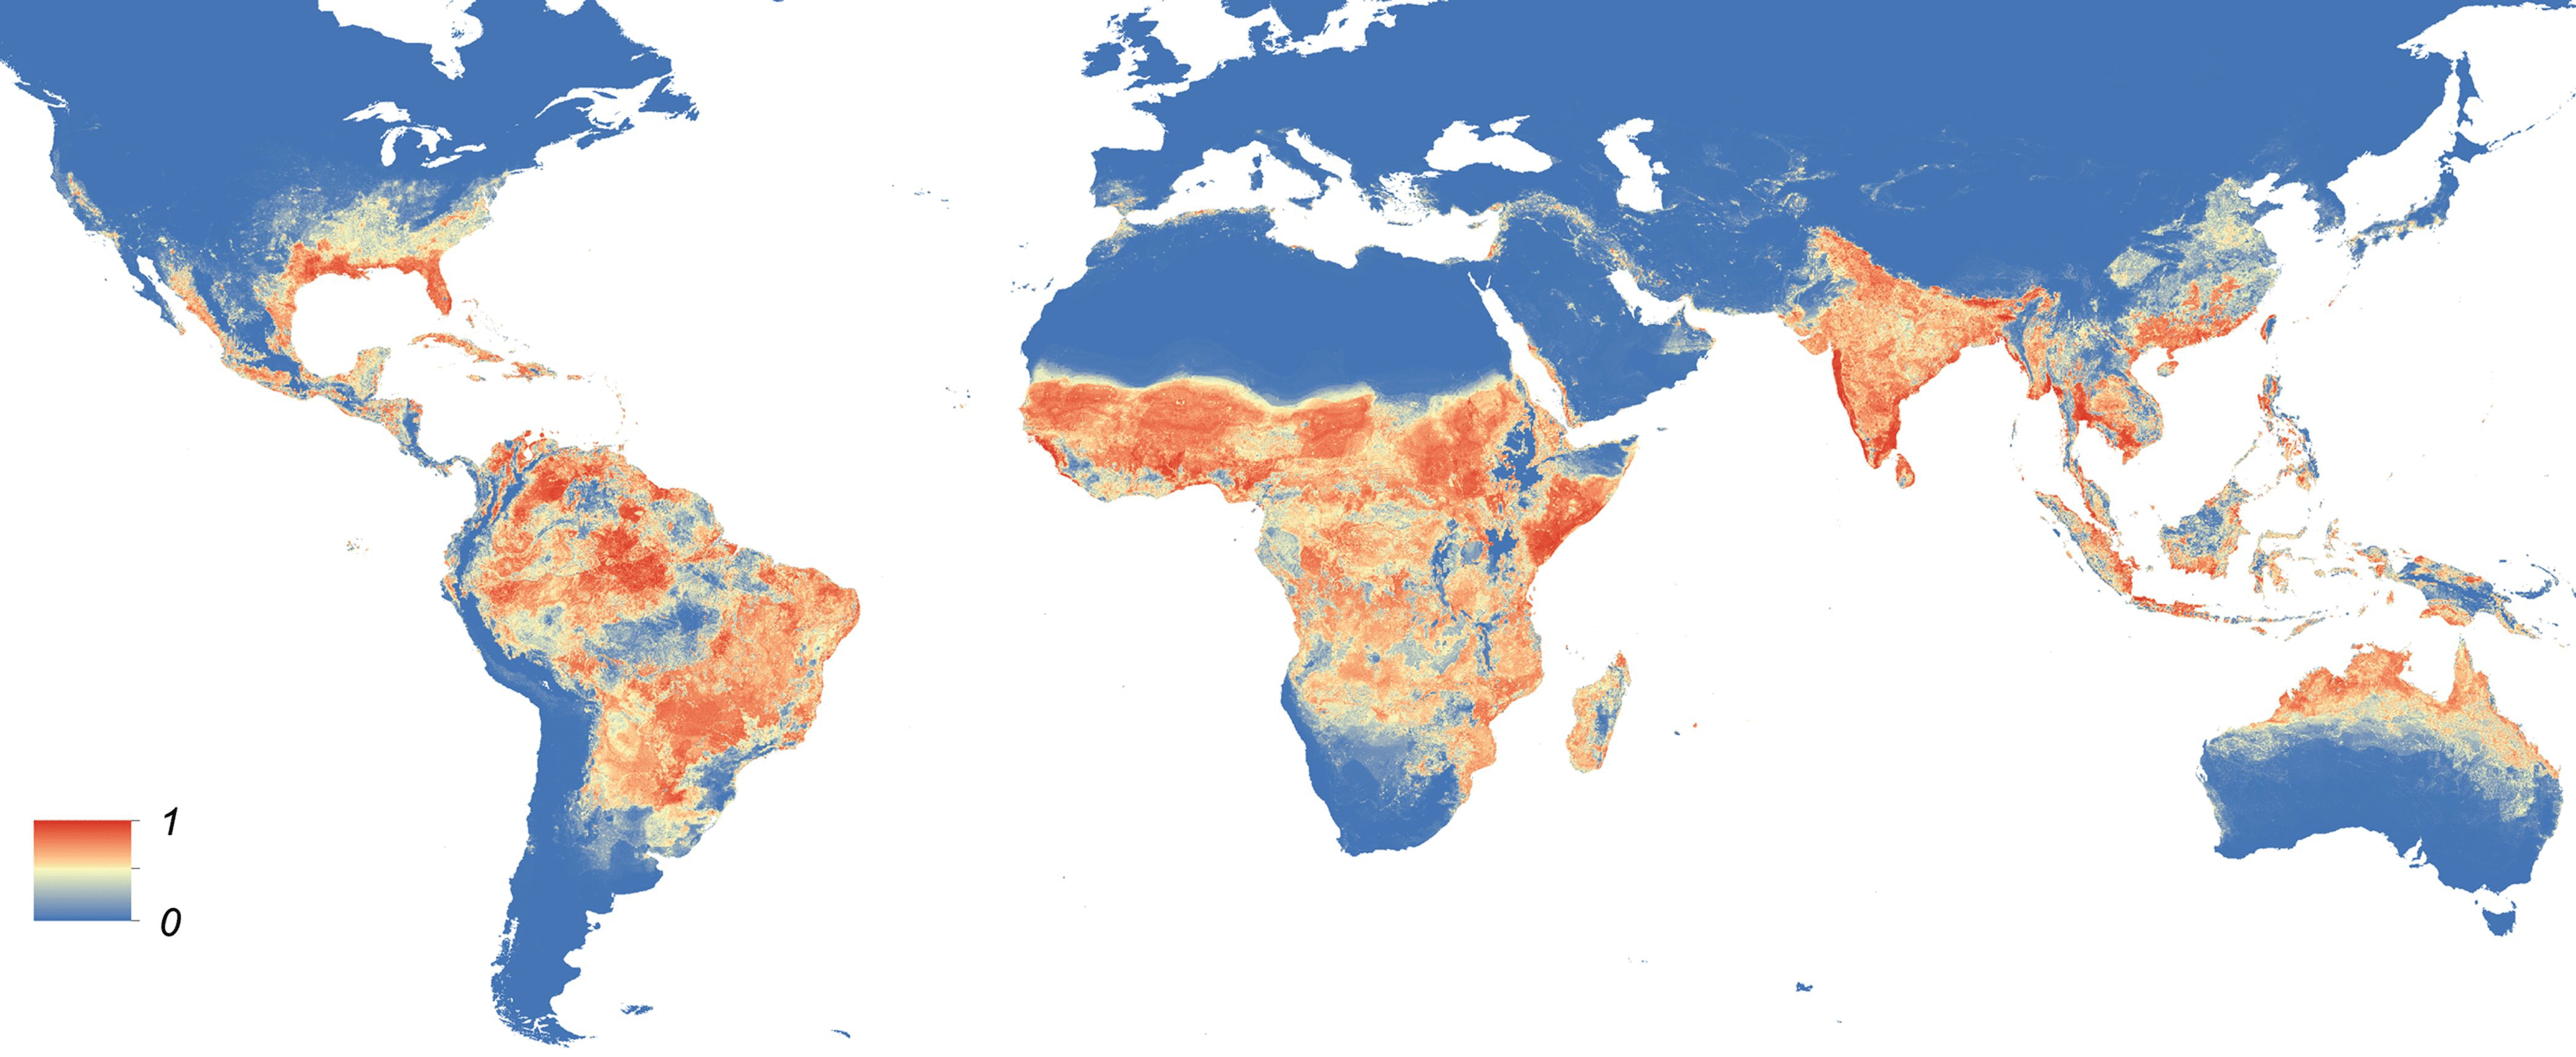 Výskyt komára Aedes aegypti přenášejícího virus zika. Modré jsou oblasti, kde se nevyskytuje, červené s vysokým výskytem. Kredit Moritz UG Kraemer a kol. http://elifesciences.org/content/4/e08347